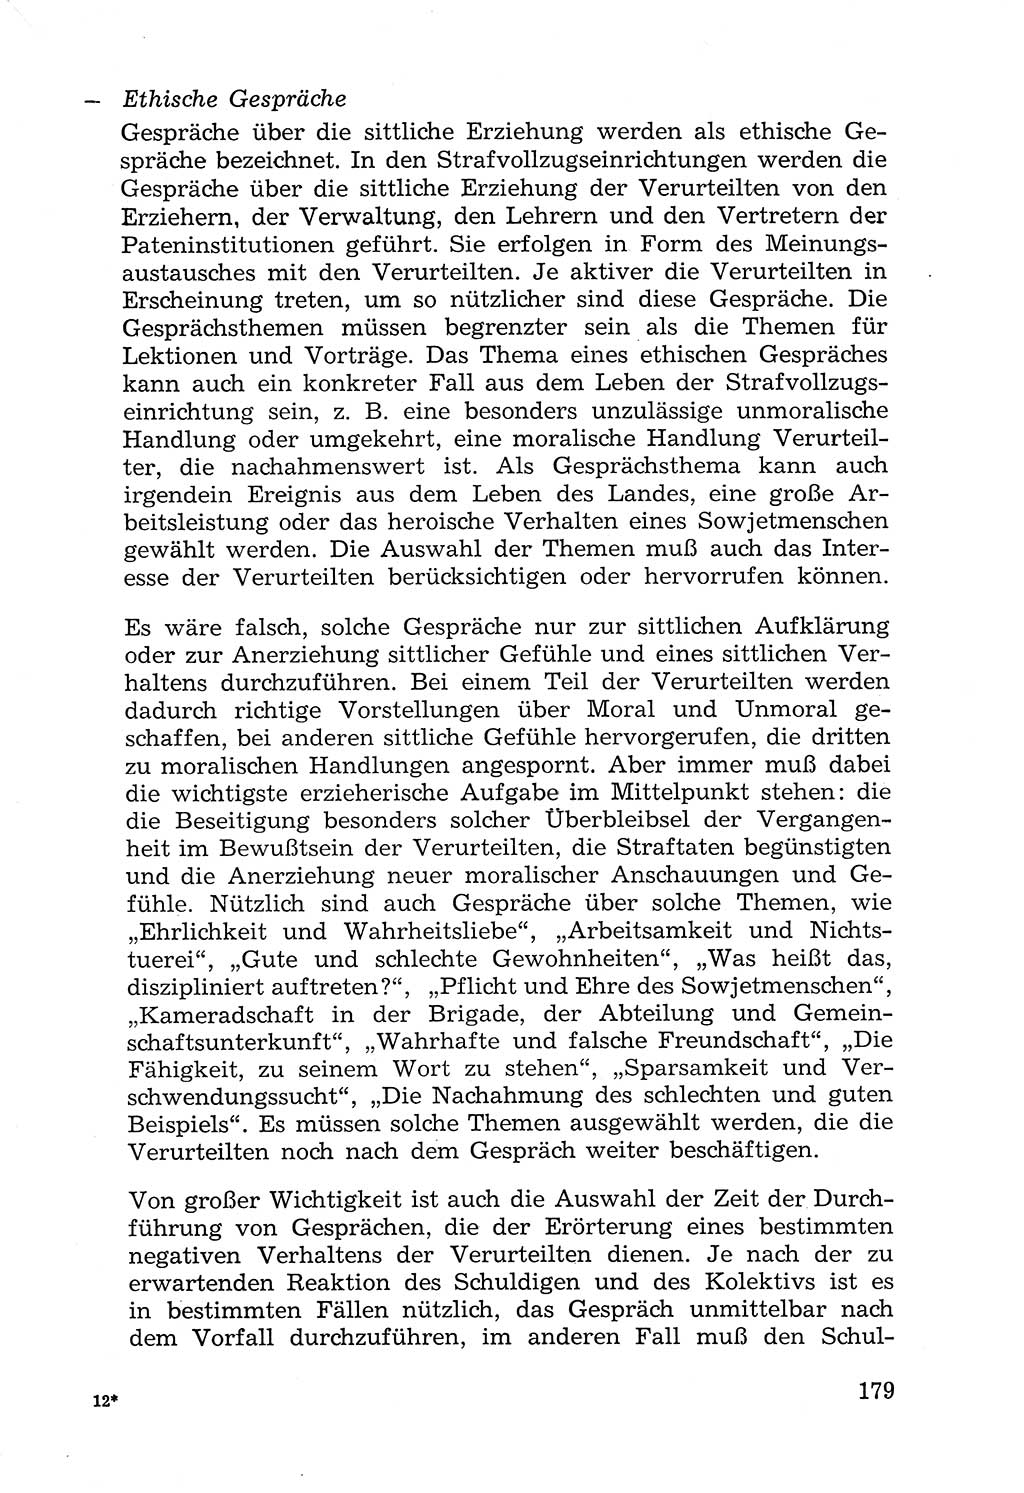 Lehrbuch der Strafvollzugspädagogik [Deutsche Demokratische Republik (DDR)] 1969, Seite 179 (Lb. SV-Pd. DDR 1969, S. 179)